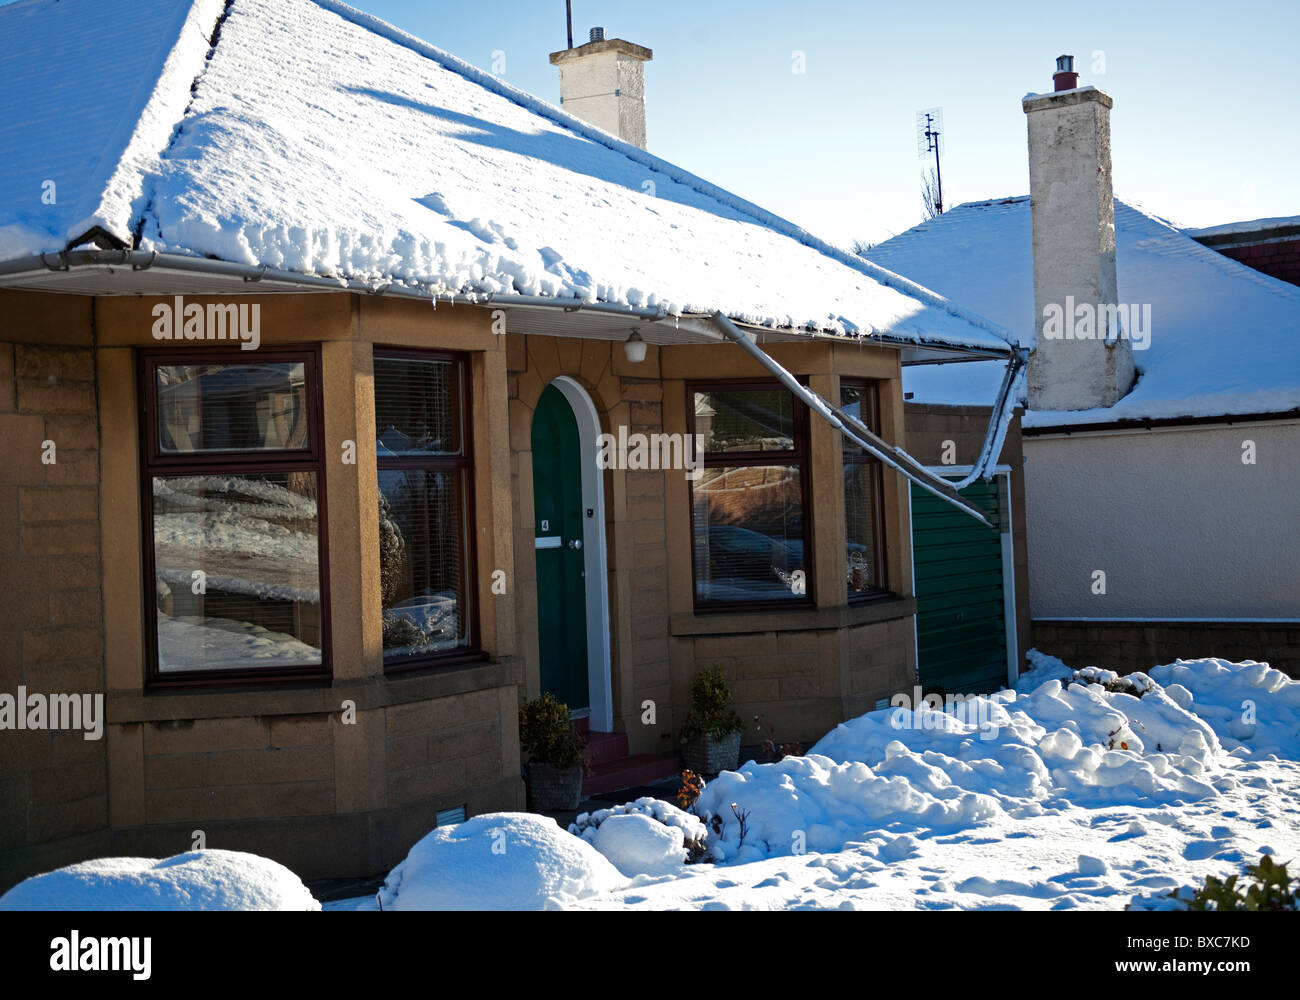 Les dommages dus à la neige d'hiver, l'effondrement des gouttières de toit en raison de conditions météorologiques glacées Banque D'Images